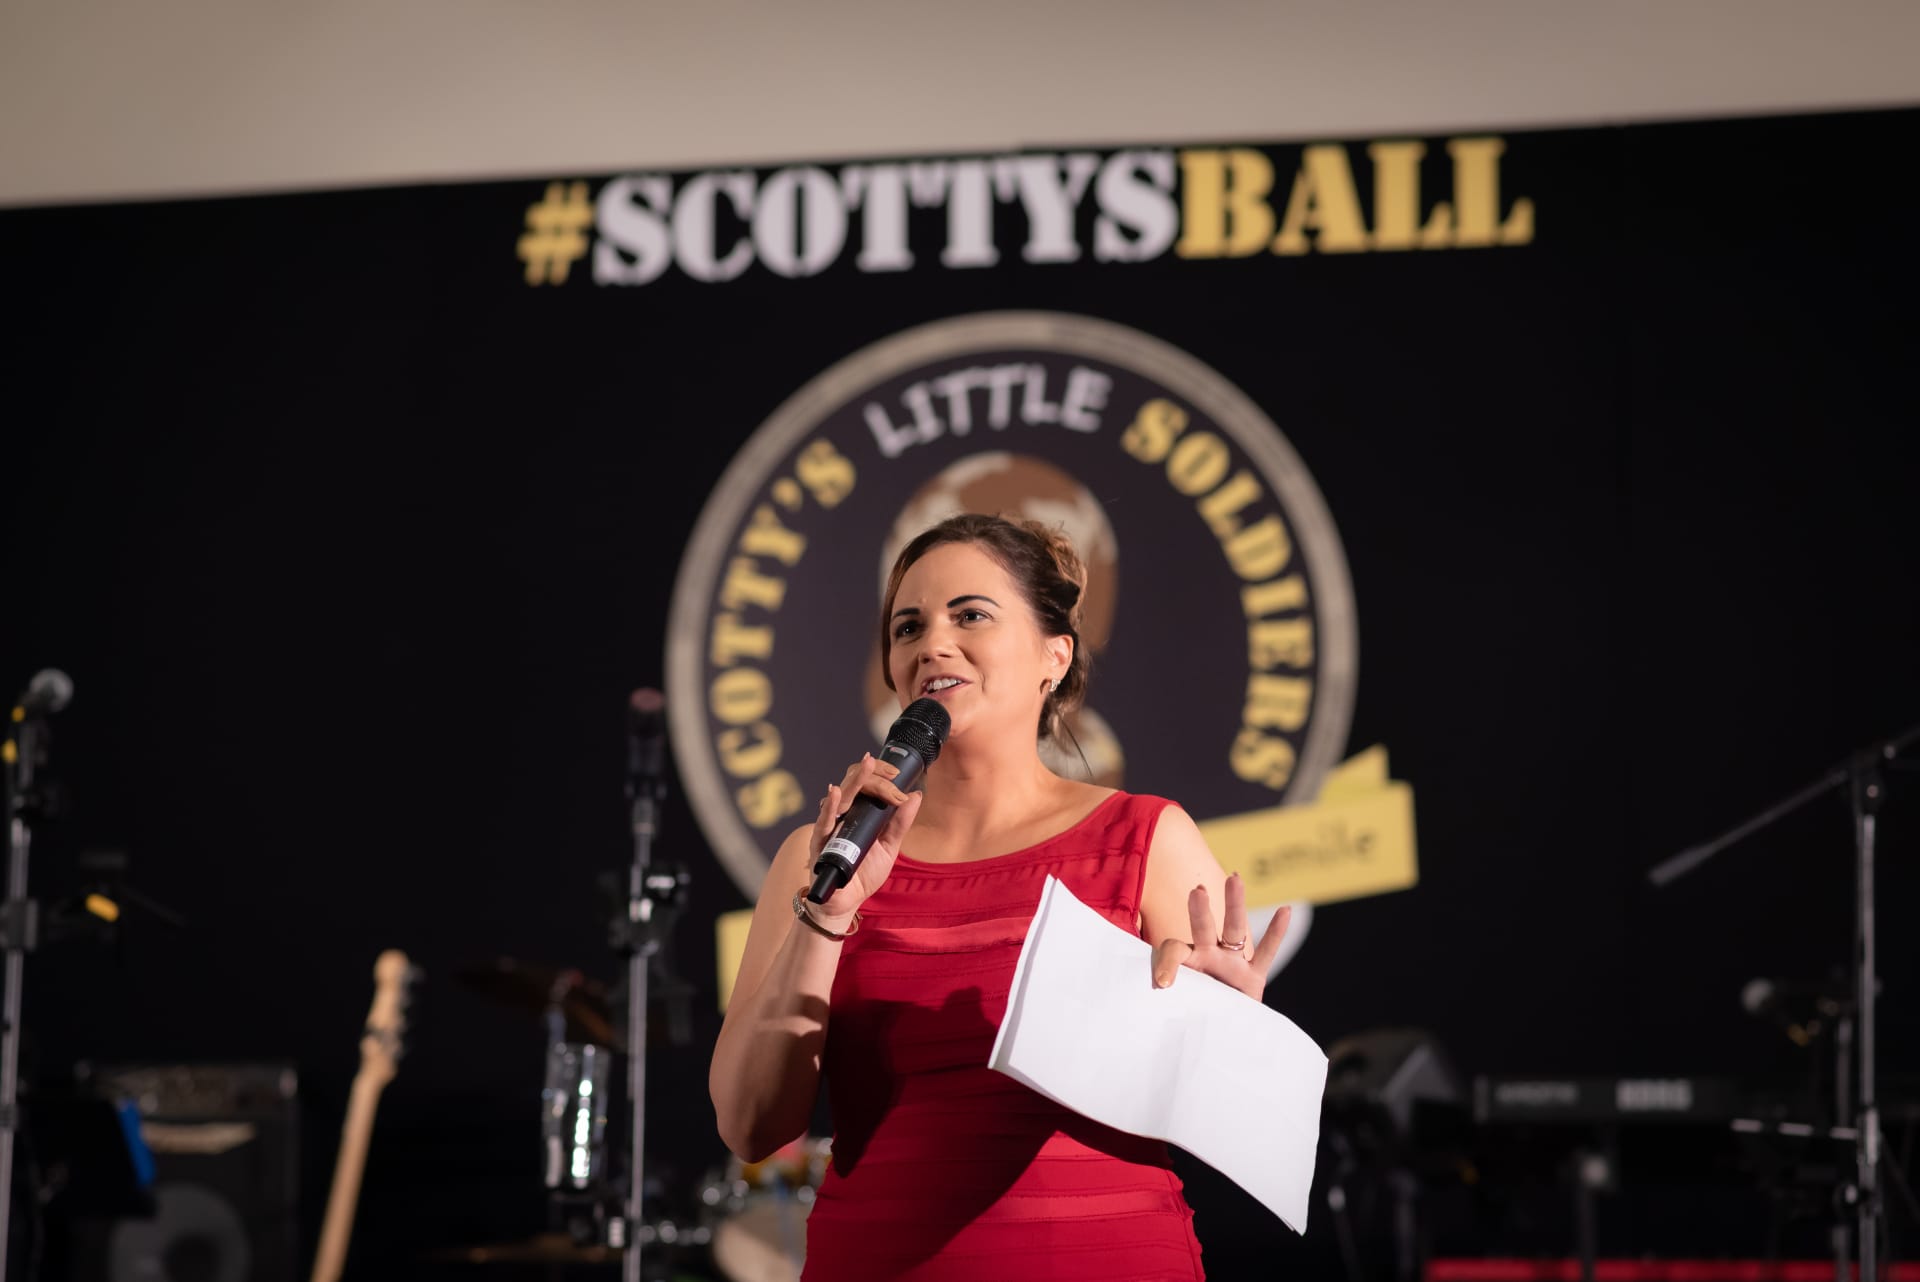 Nikki Scott gives a speech at Scotty's Ball